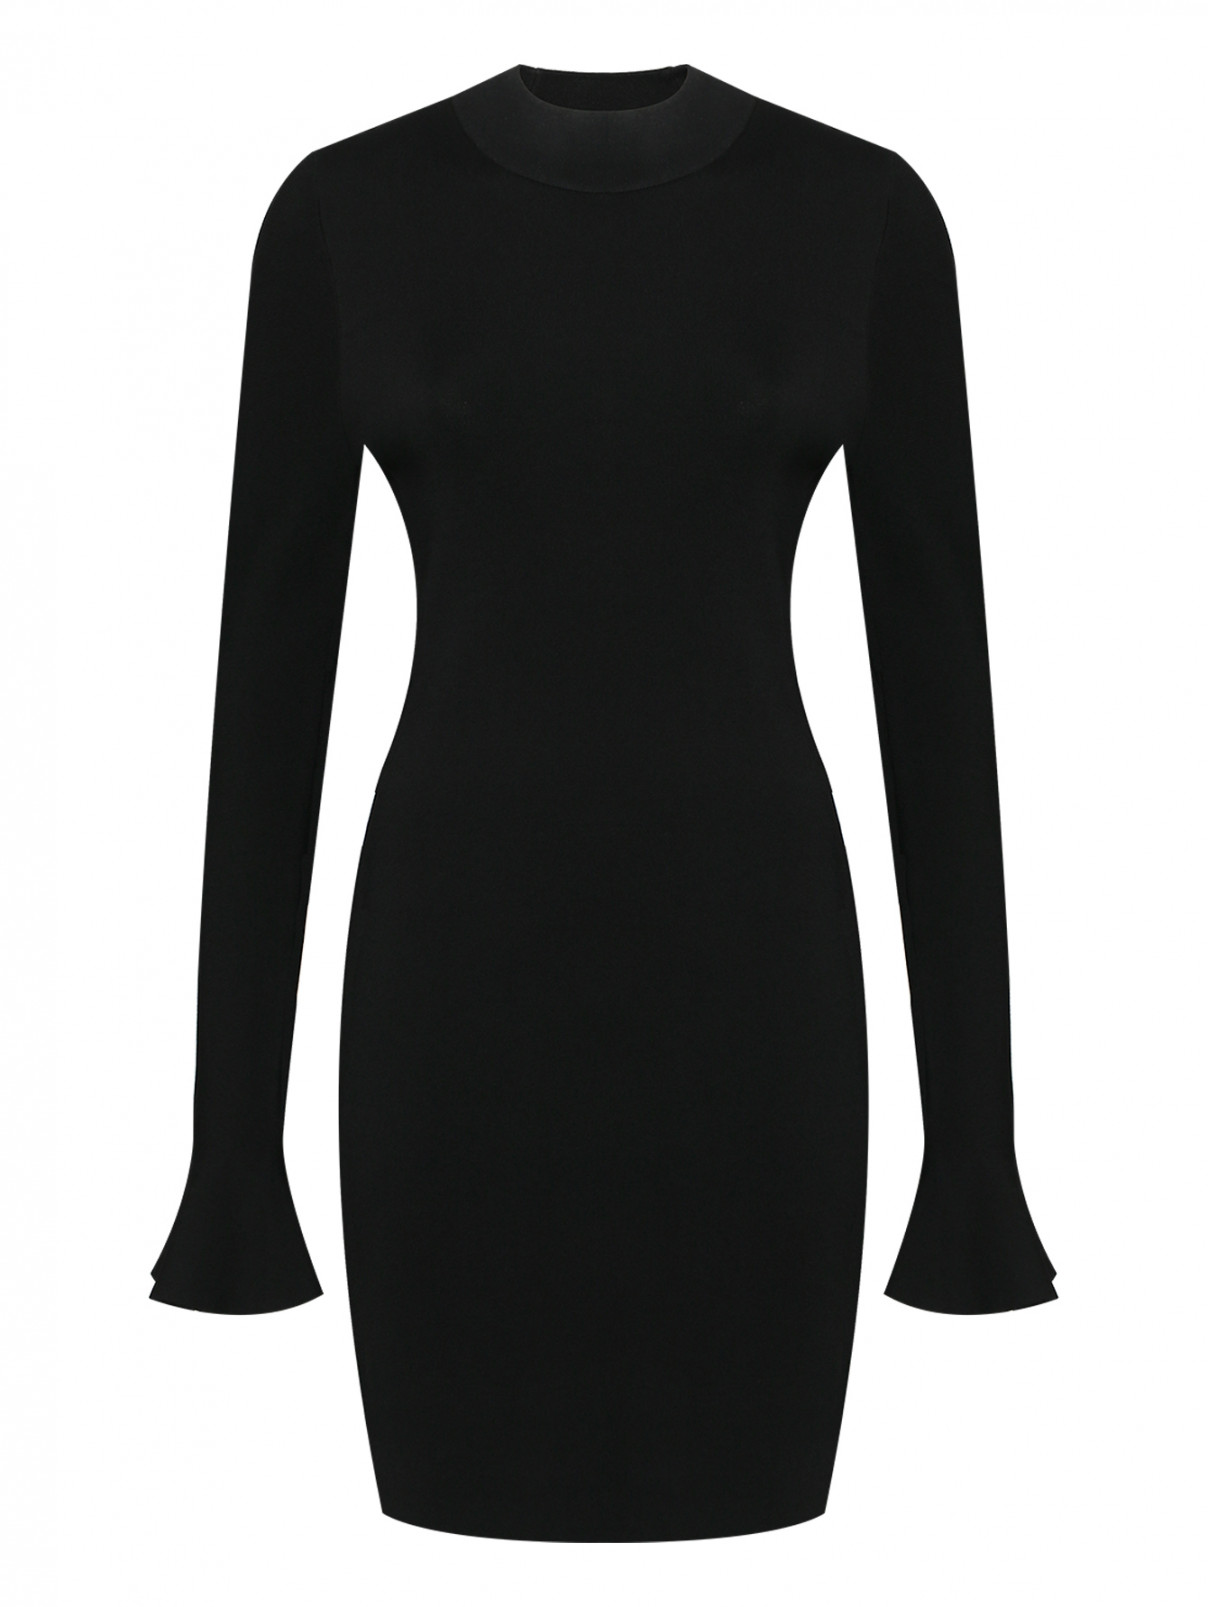 Трикотажное платье-мини с длинными рукавами Michael by MK  –  Общий вид  – Цвет:  Черный